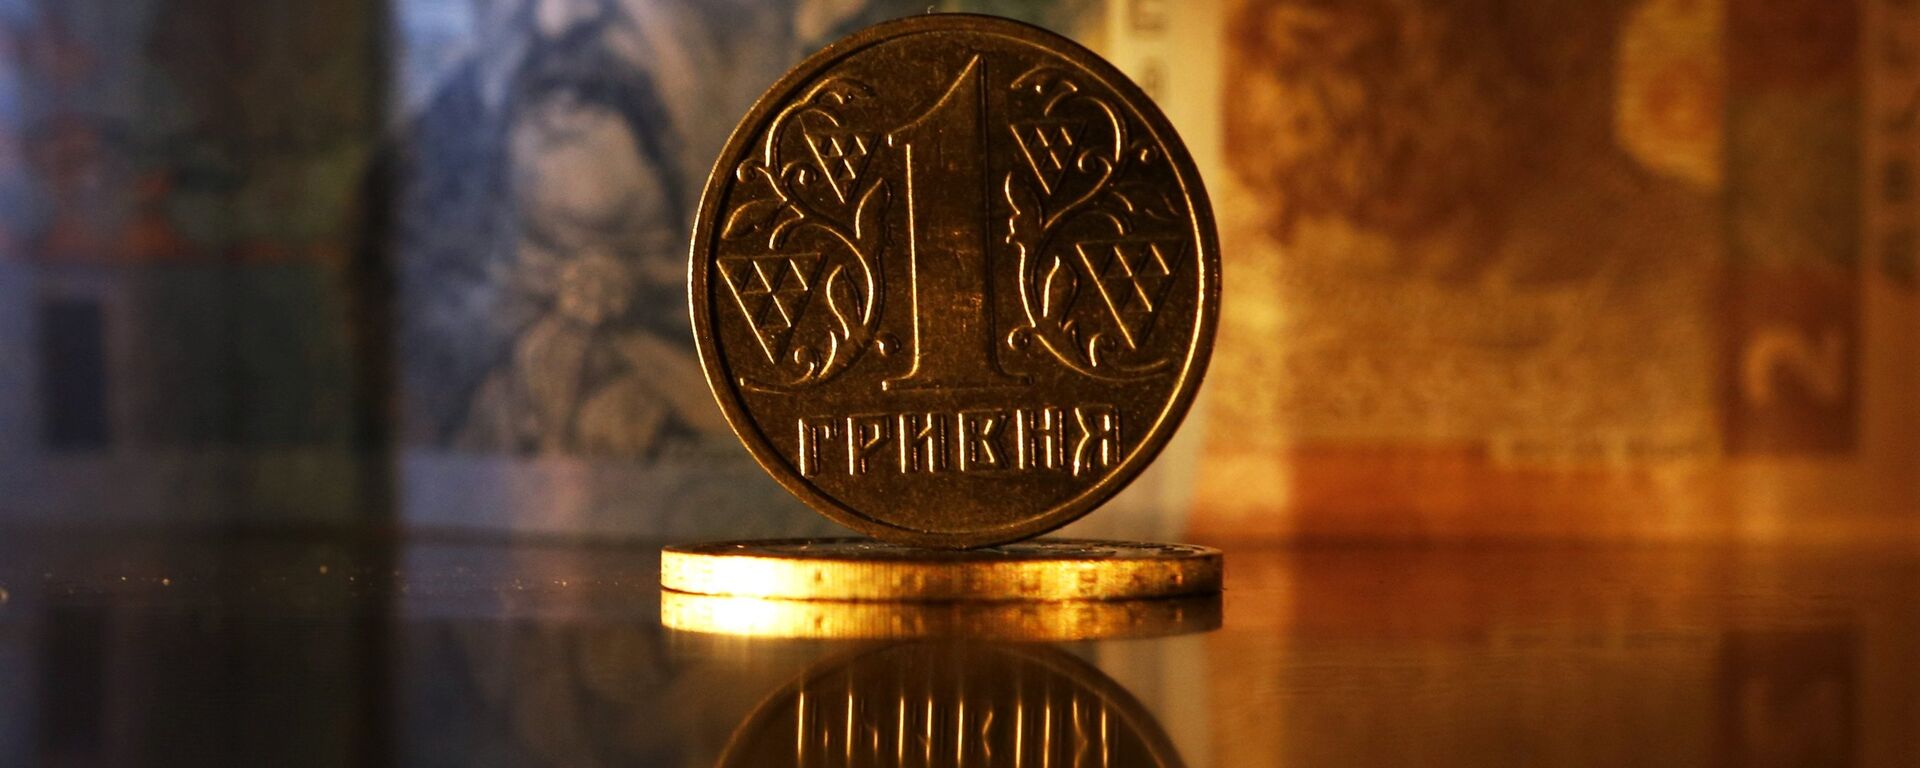 Ukrainos banknotai ir monetos - Sputnik Lietuva, 1920, 19.02.2022